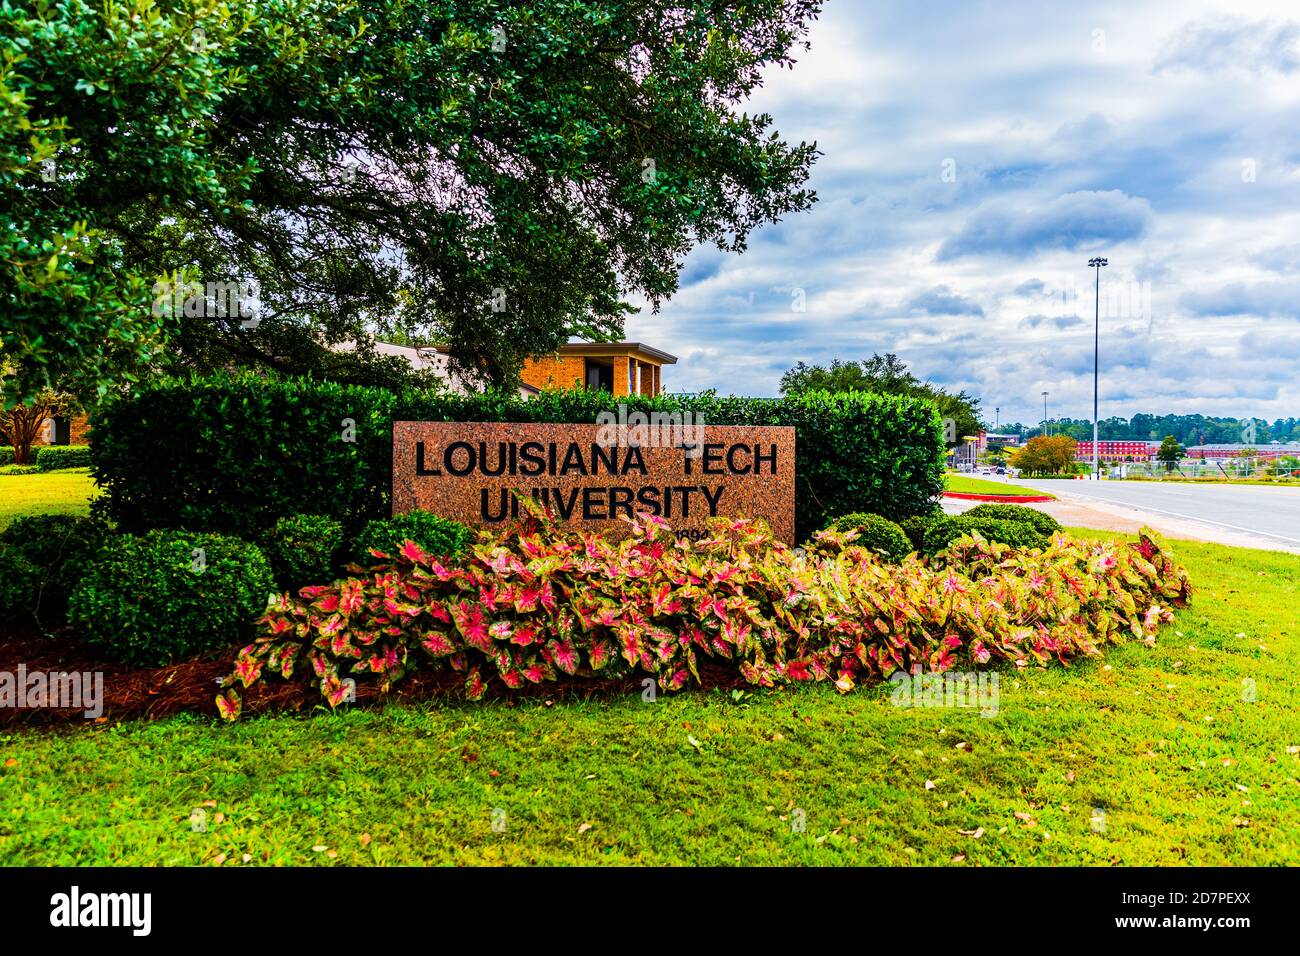 Ruston, LA / USA - 10 ottobre 2020: Insegna della Louisiana Tech University che dà il benvenuto a tutti nel campus Foto Stock